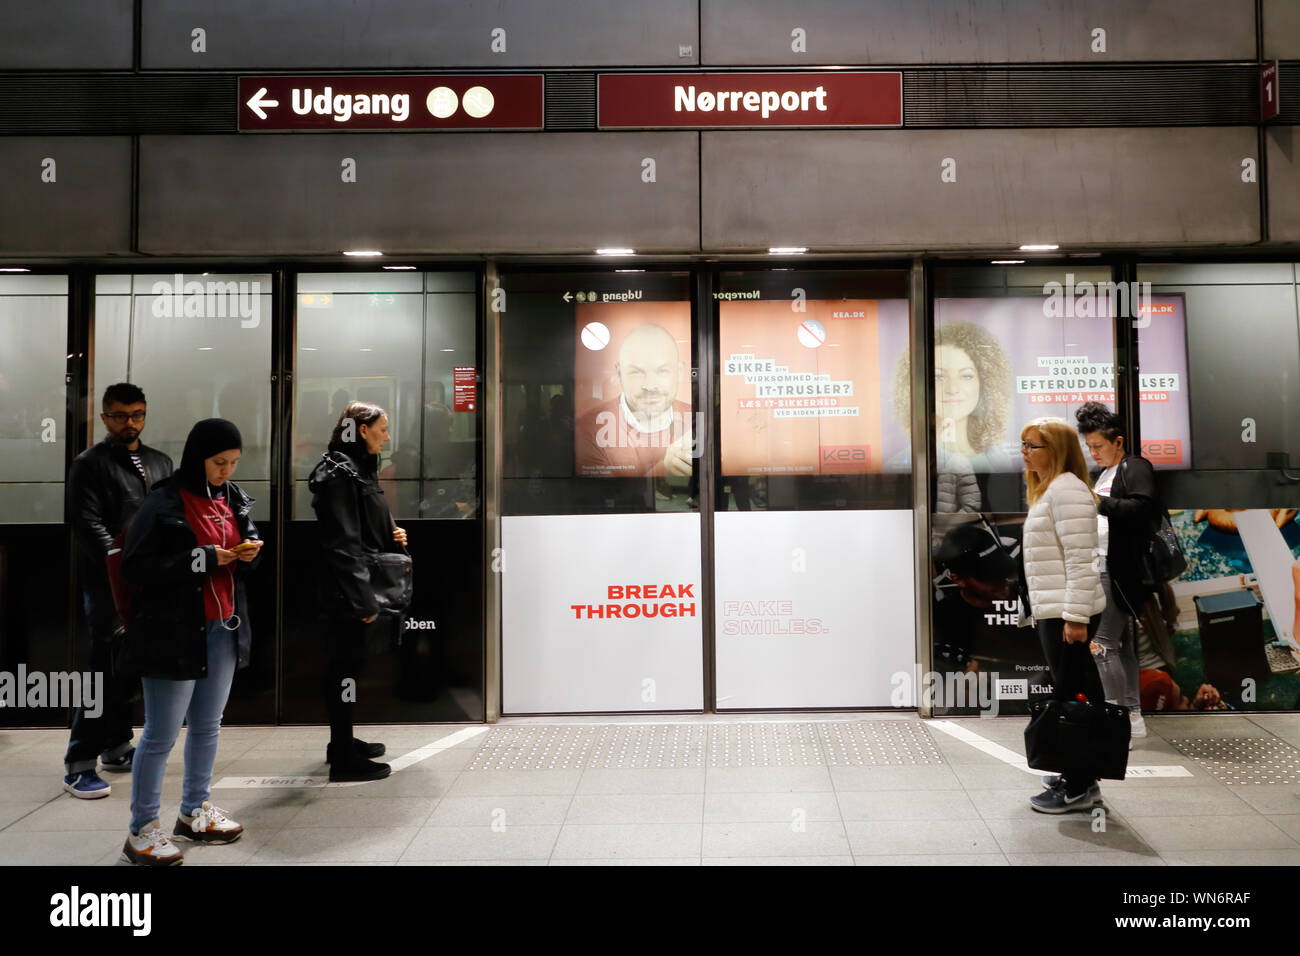 Copenhague, Danemark - septembre 4, 2019 : personnes en attente à la gare Norreport portes de plate-forme pour le transport en commun rapide Subway train. Banque D'Images